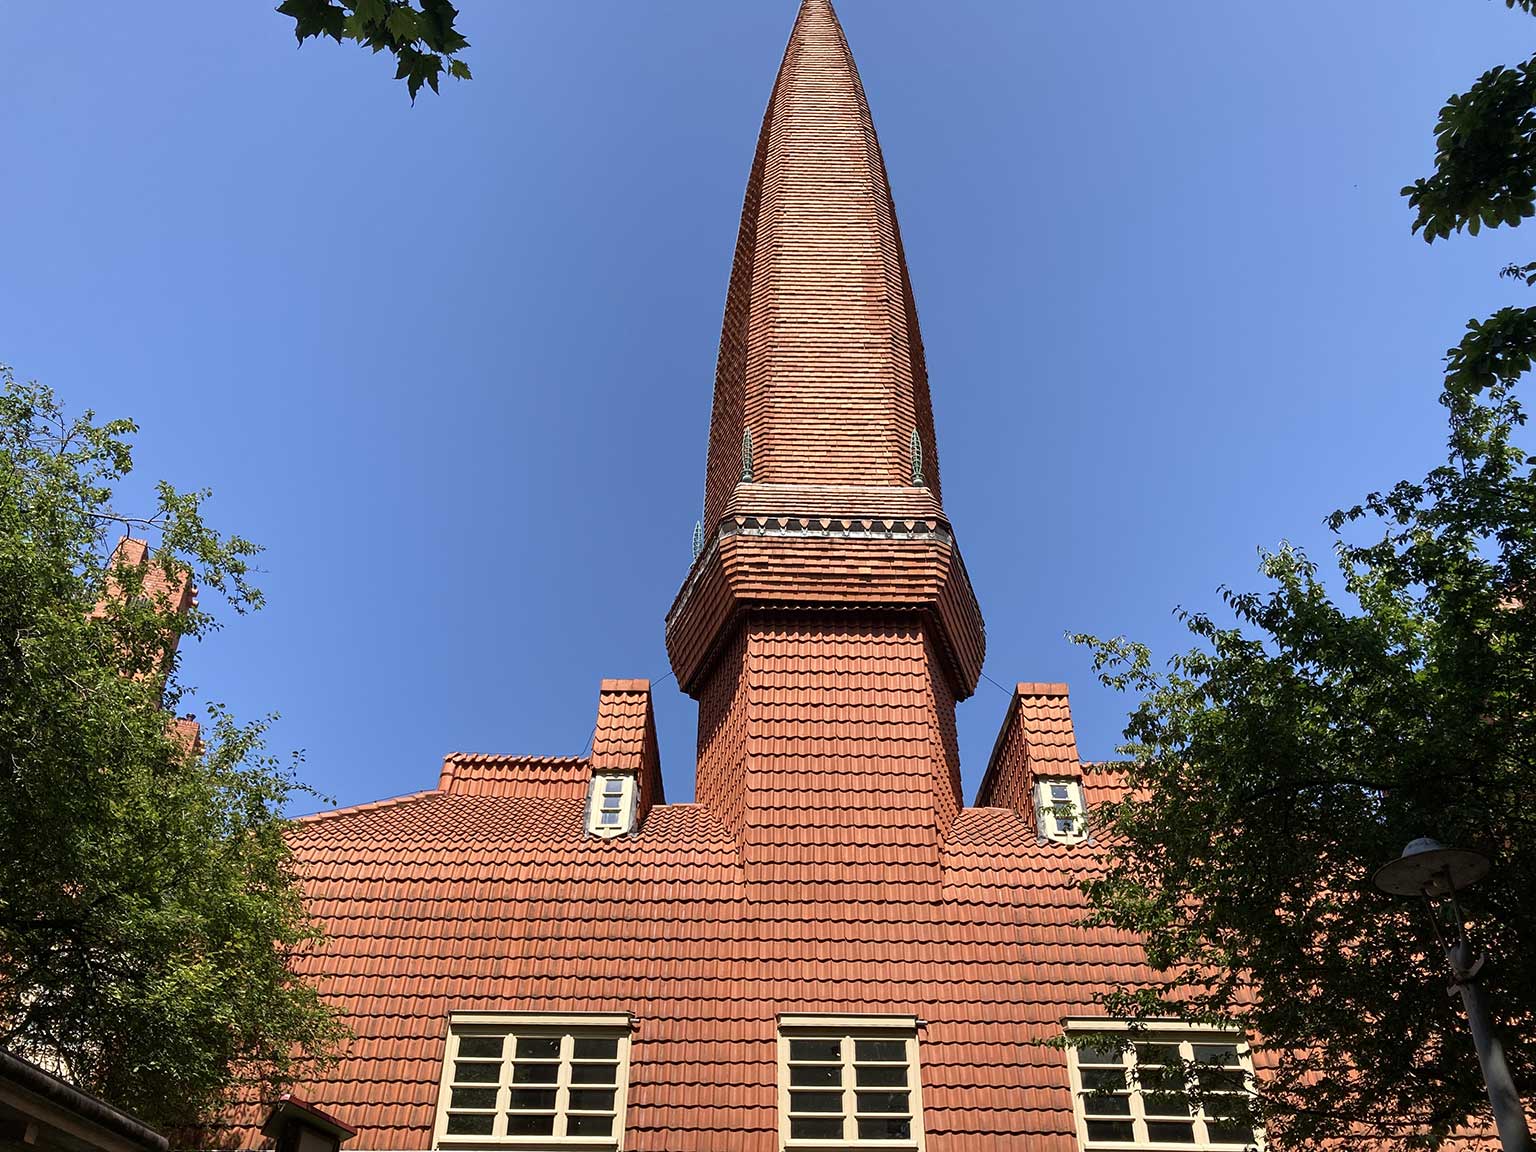 Housing block Het Schip, Amsterdam, tile covered spire on the roof